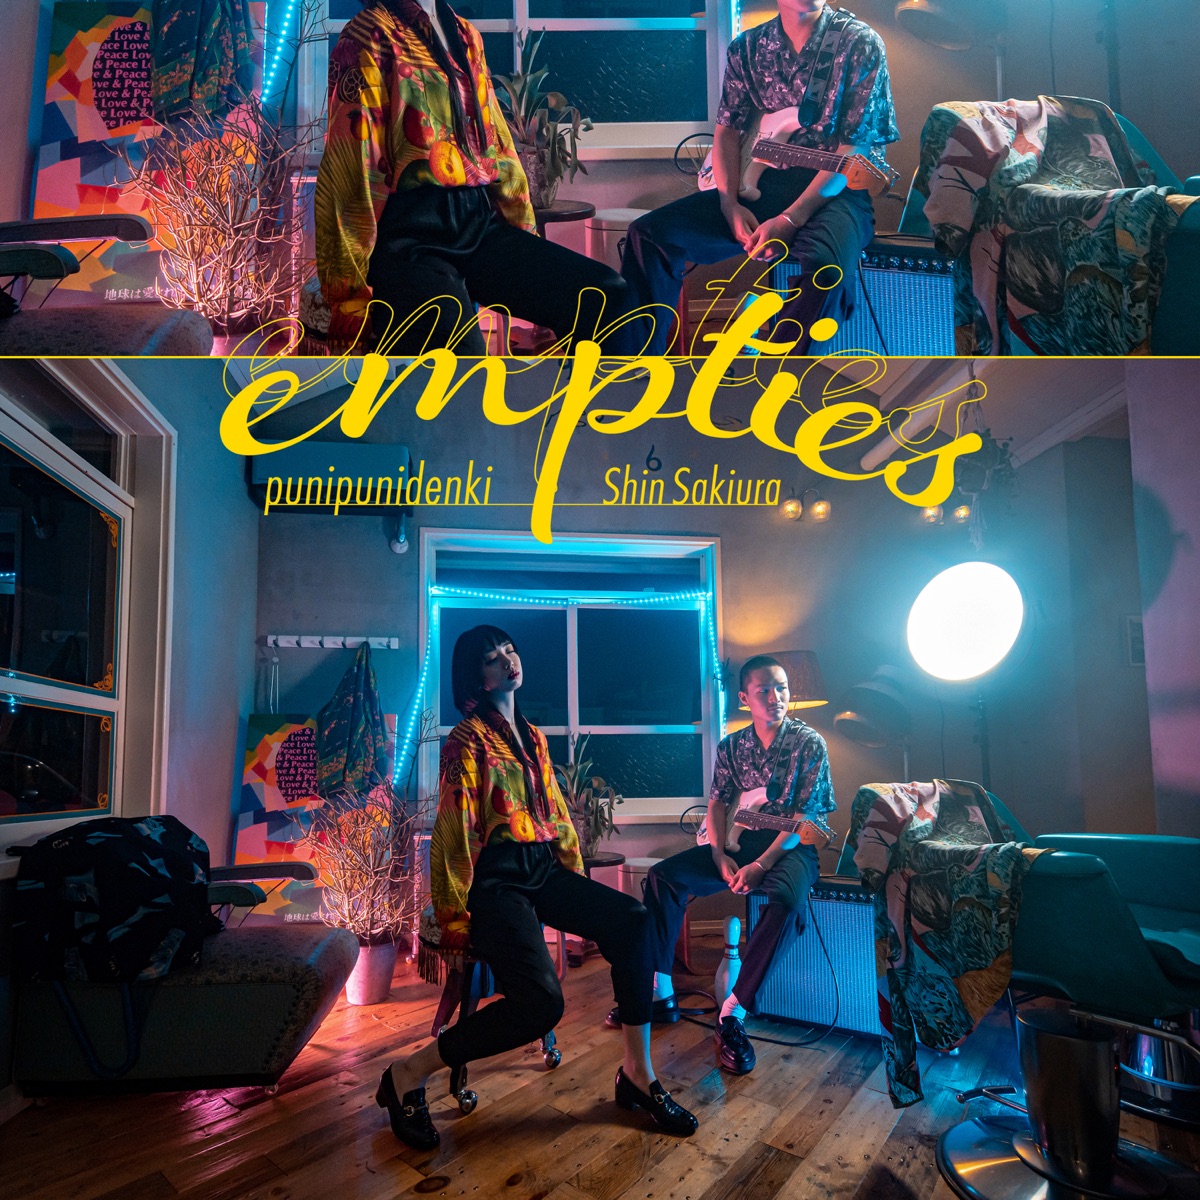 『ぷにぷに電機 & Shin Sakiura - empties 歌詞』収録の『empties』ジャケット